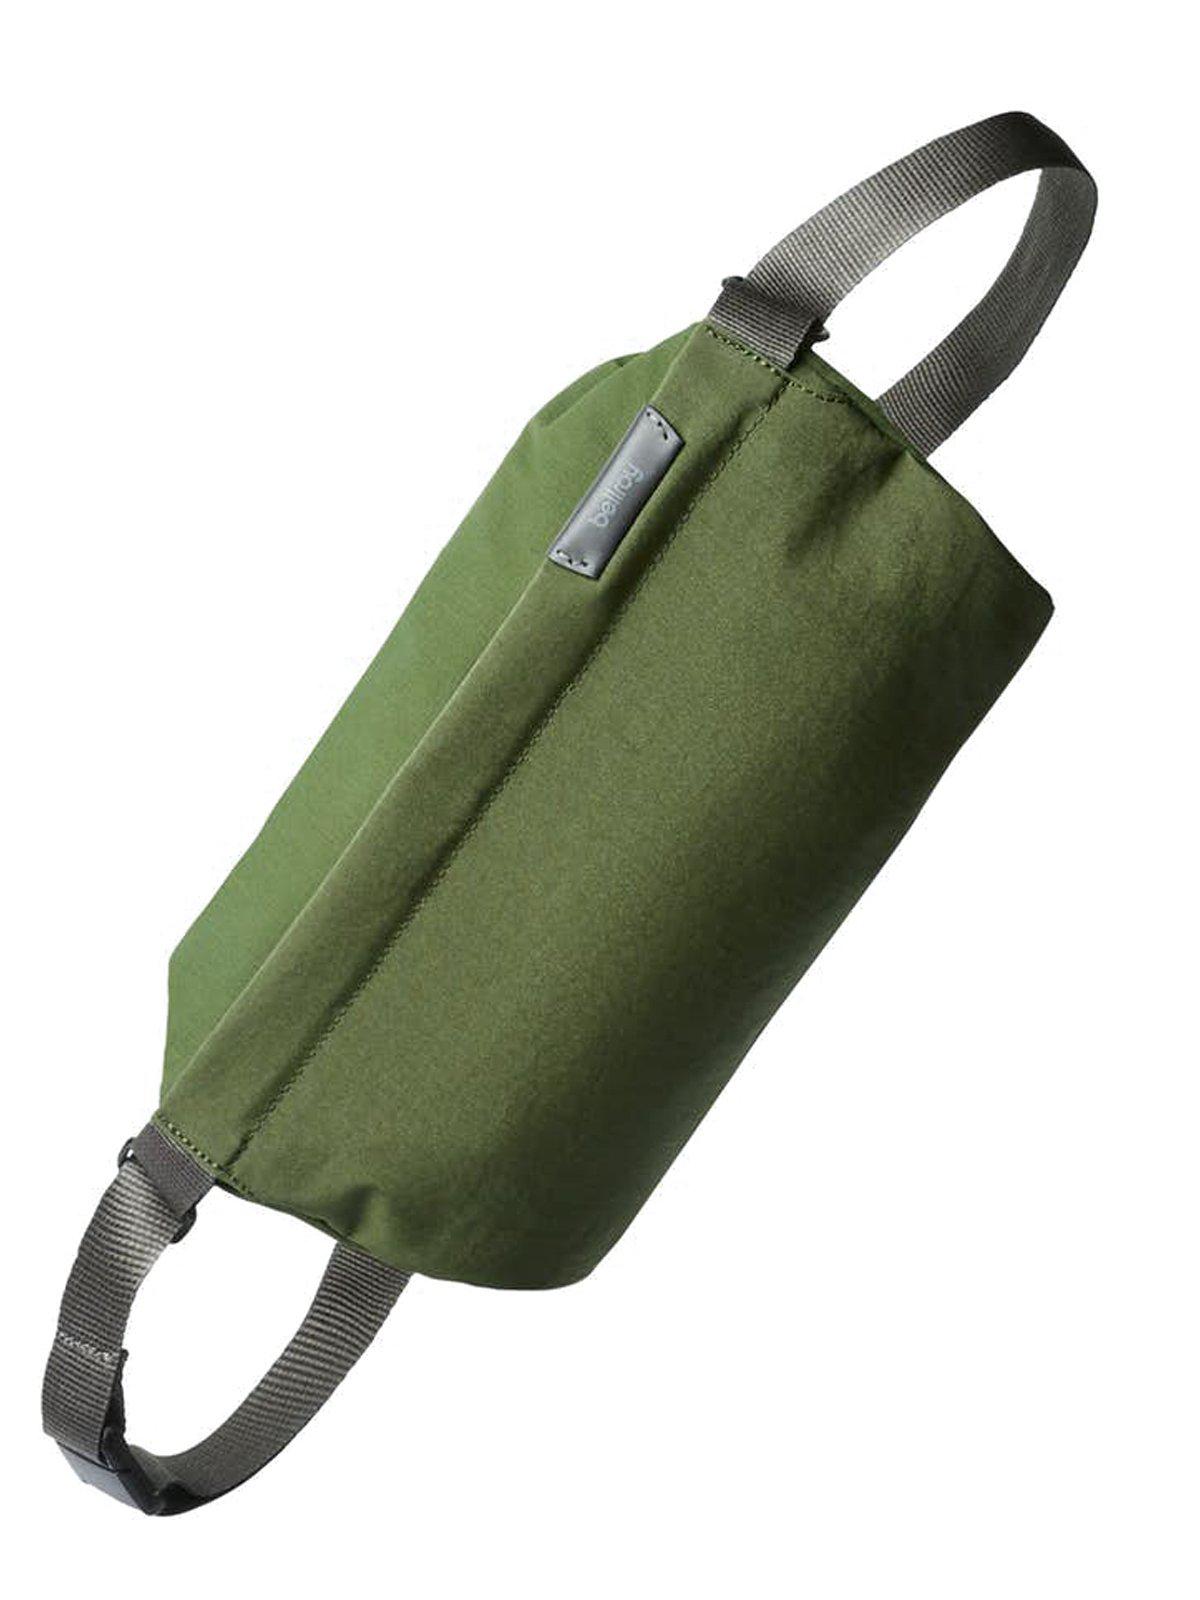 Bellroy Sling Bag Ranger Green